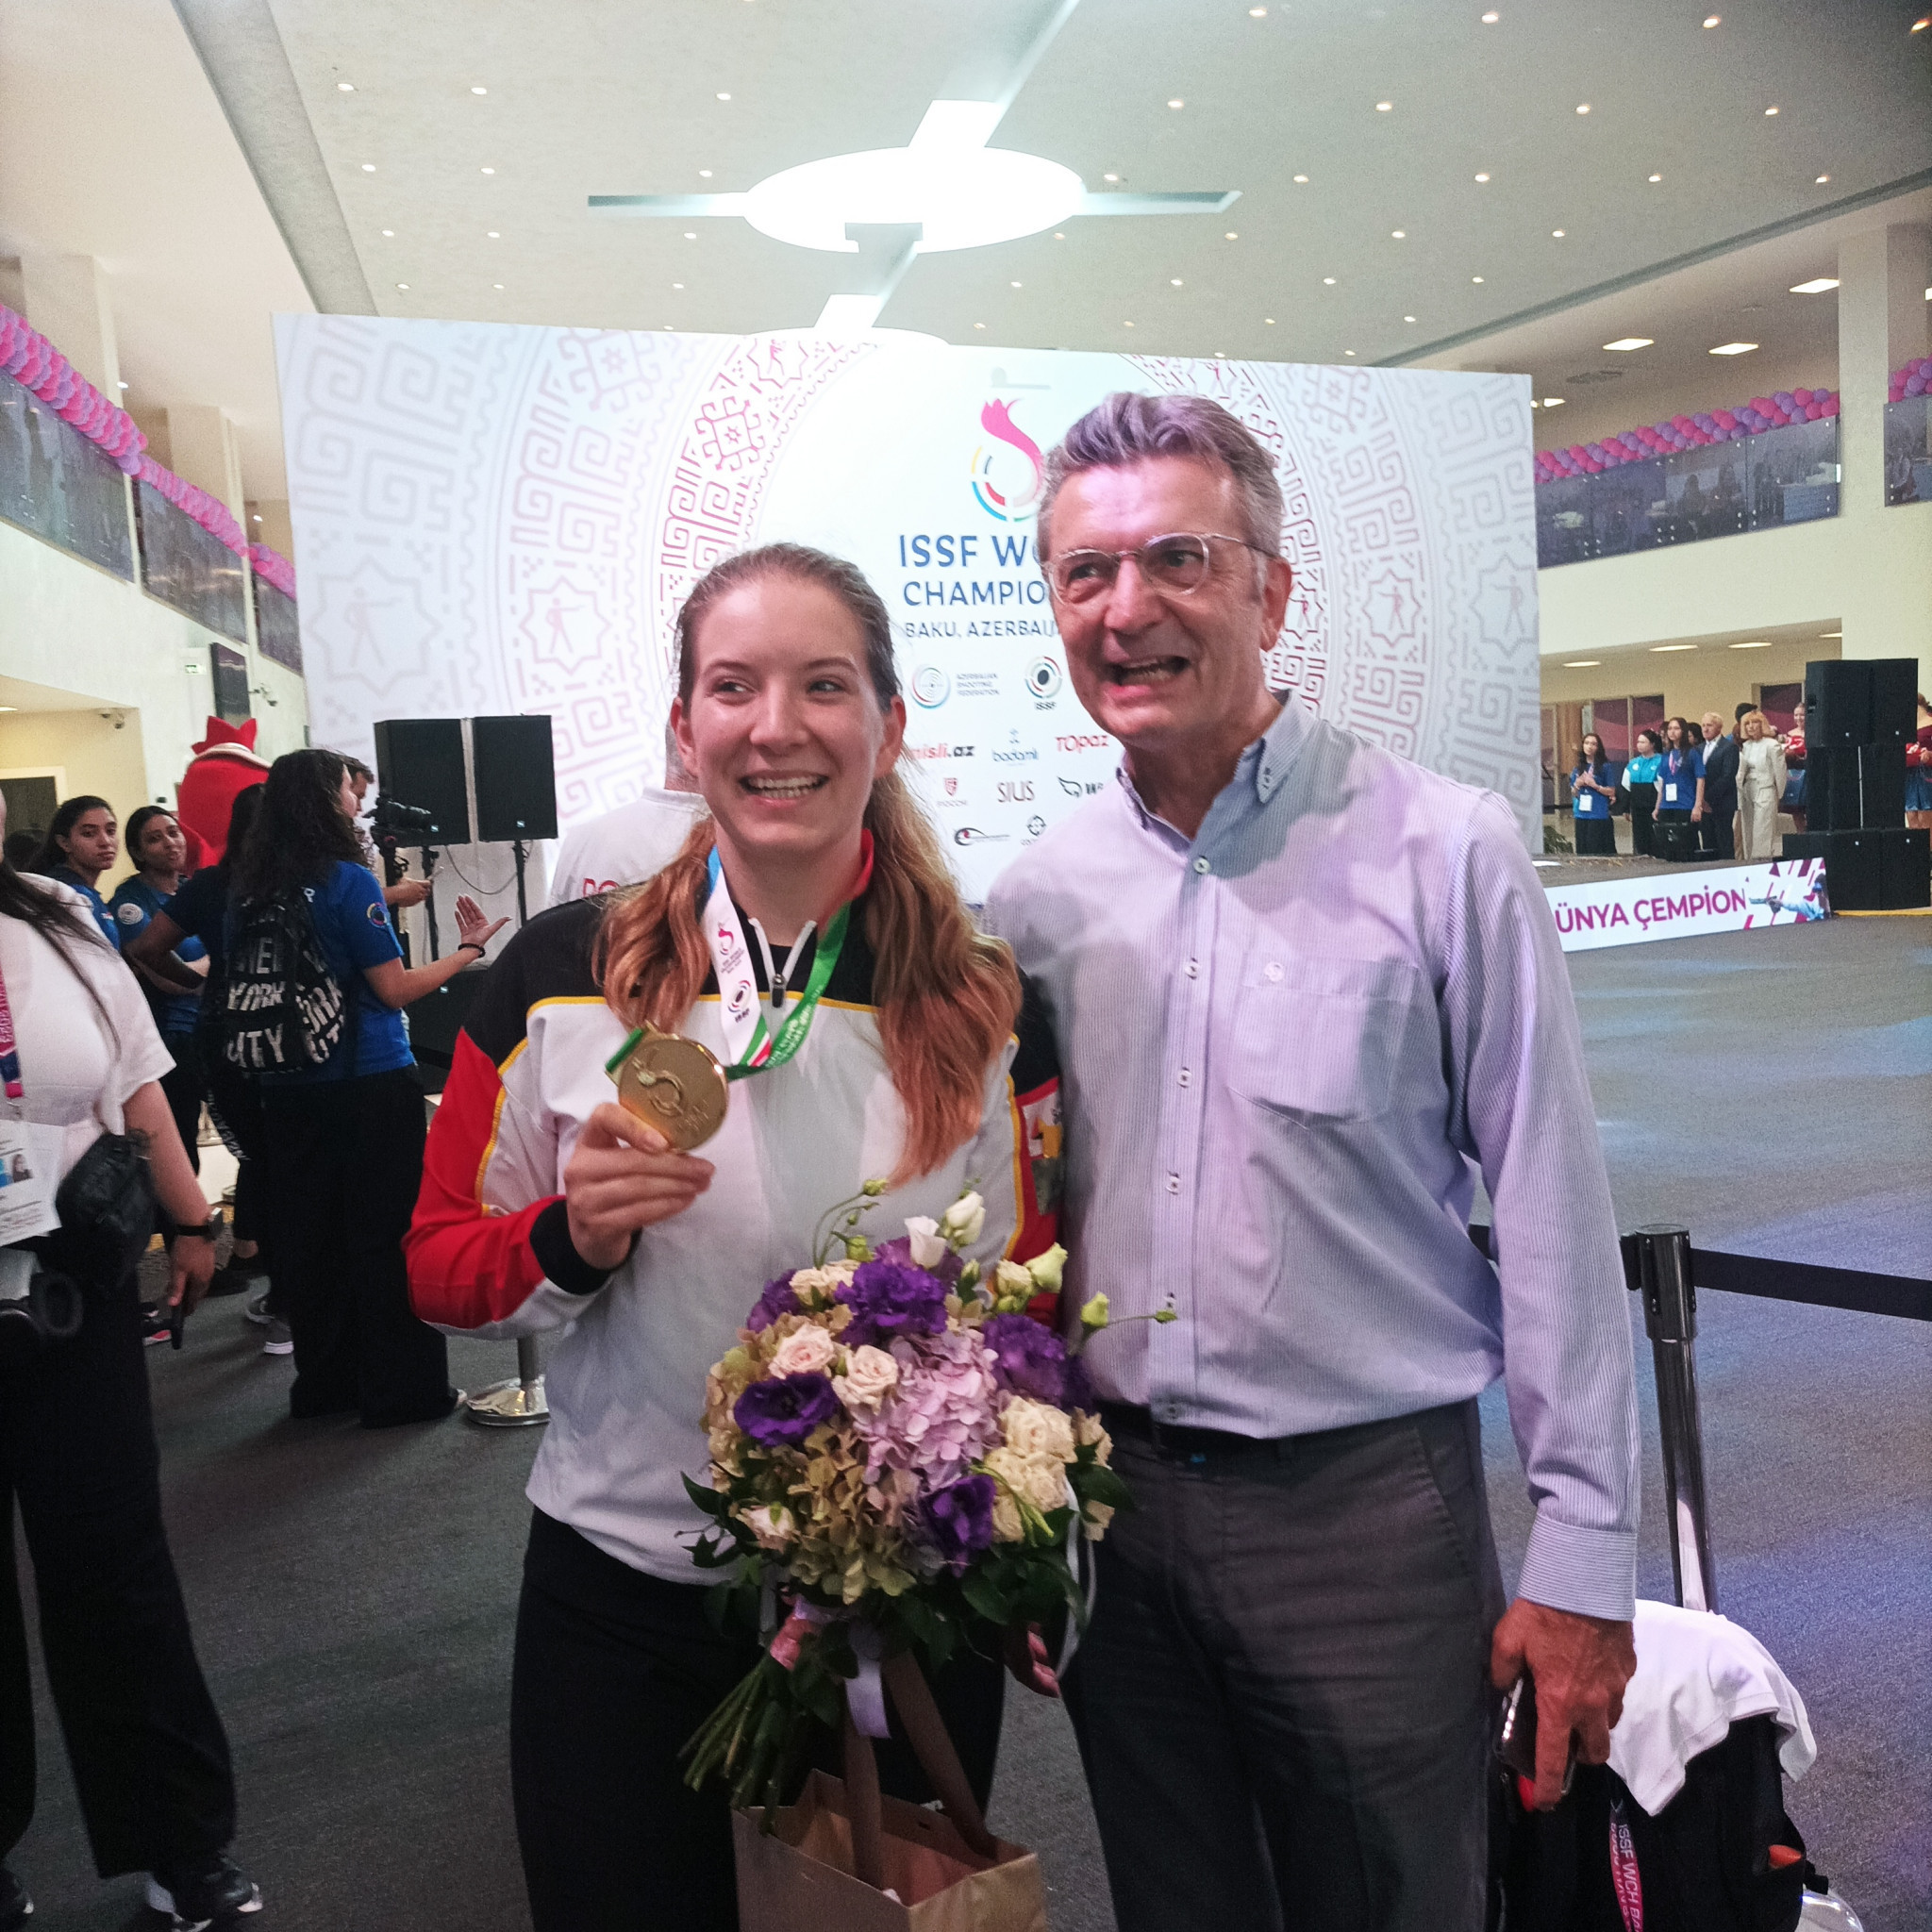 Doreen Vennekamp's gold medal winning performance was watched by German ambassador to Azerbaijan Ralf Horlemann ©ITG